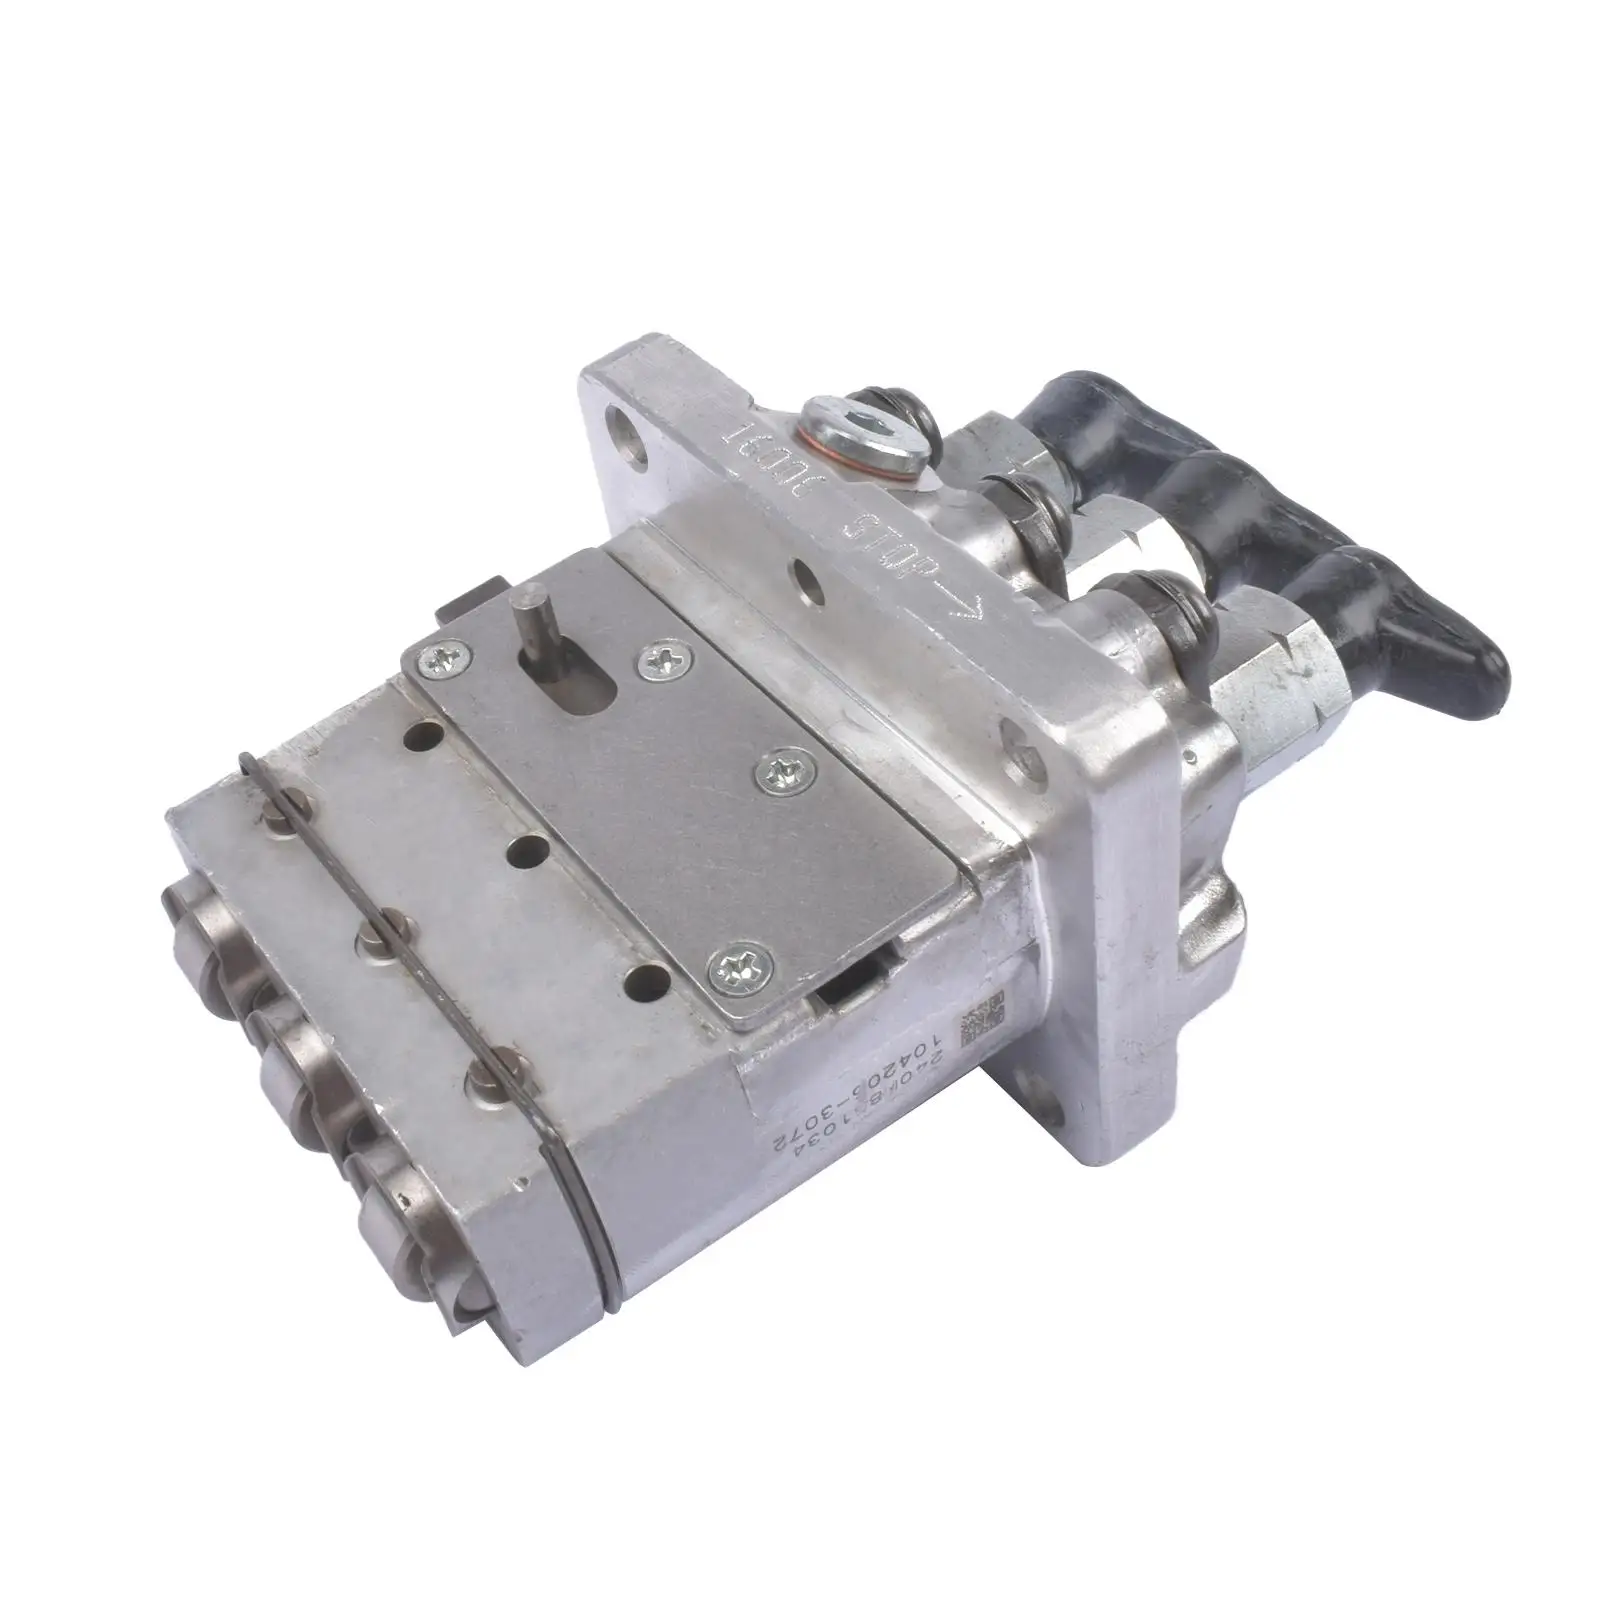 

AP01 D722 D902 D782 Fuel Injection Pump 16006-51010 For Kubota RTV900 721D 722D 322D 1600651010 1600651012